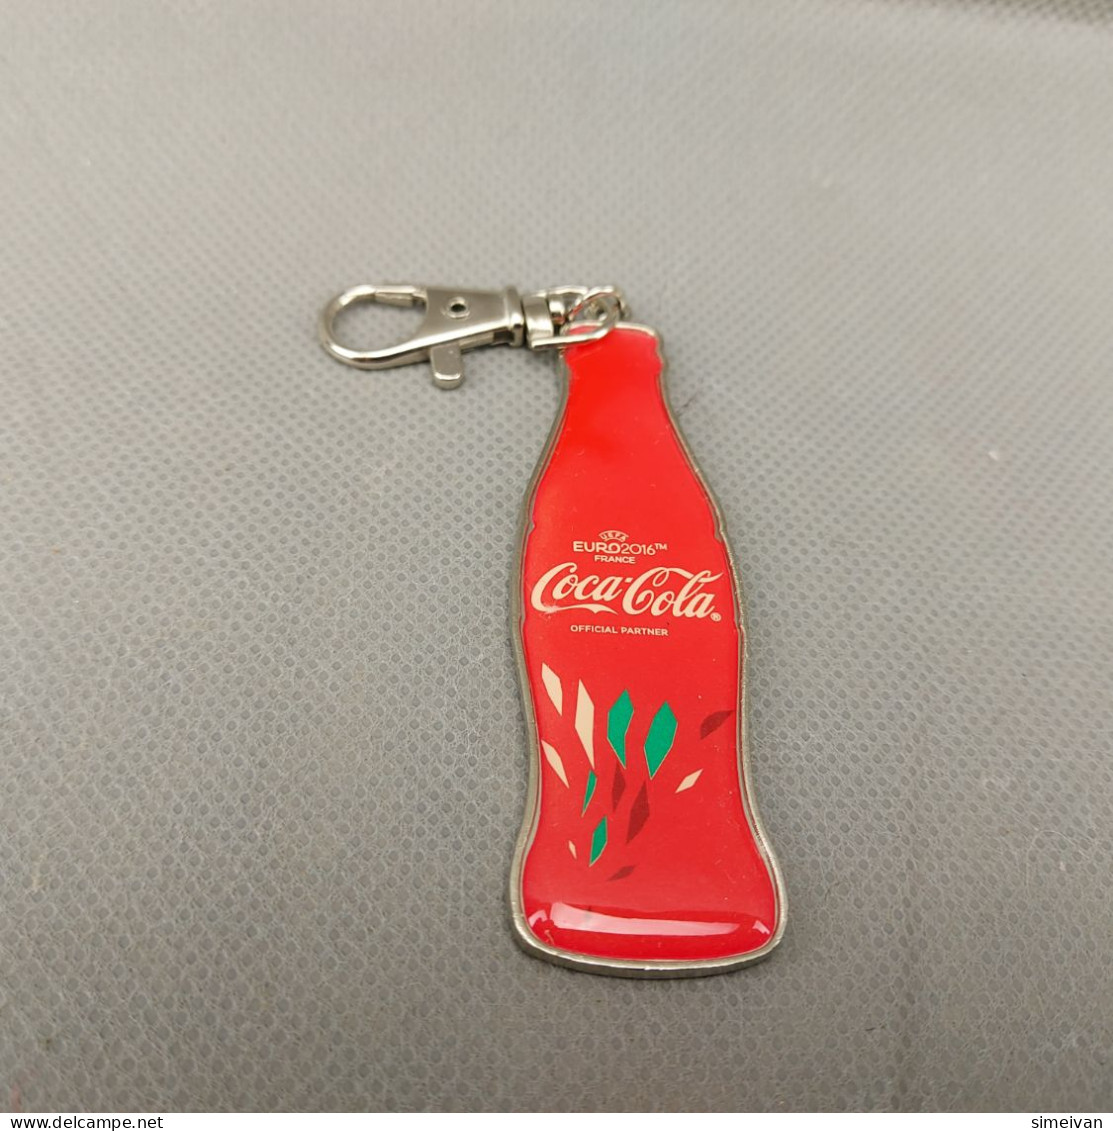 Coca Cola Euro 2016 Key Chain Key Ring #0531 - Key Chains